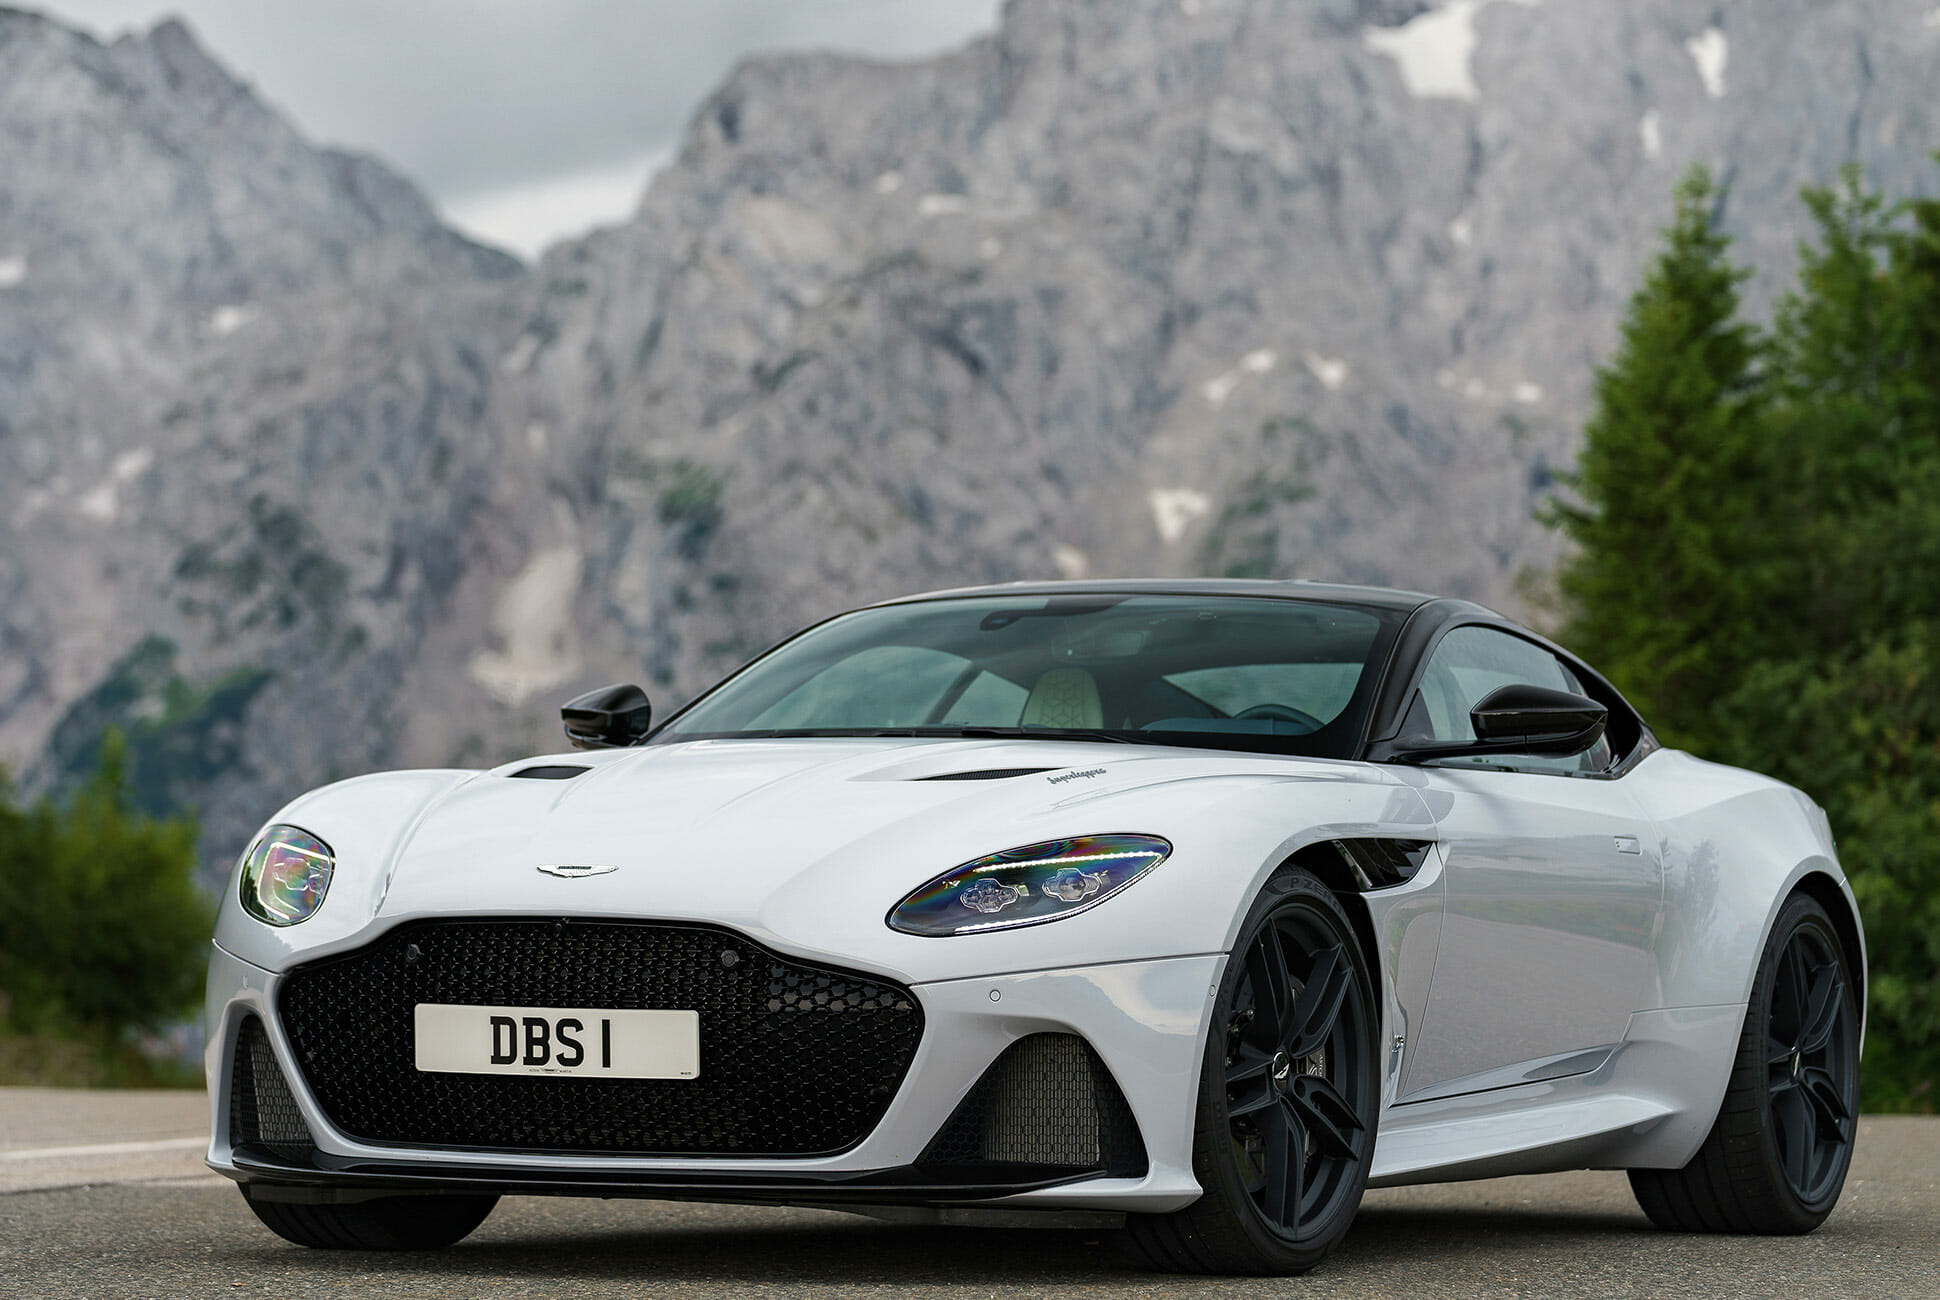 Aston Martin DBS | Gear Wiki | Fandom